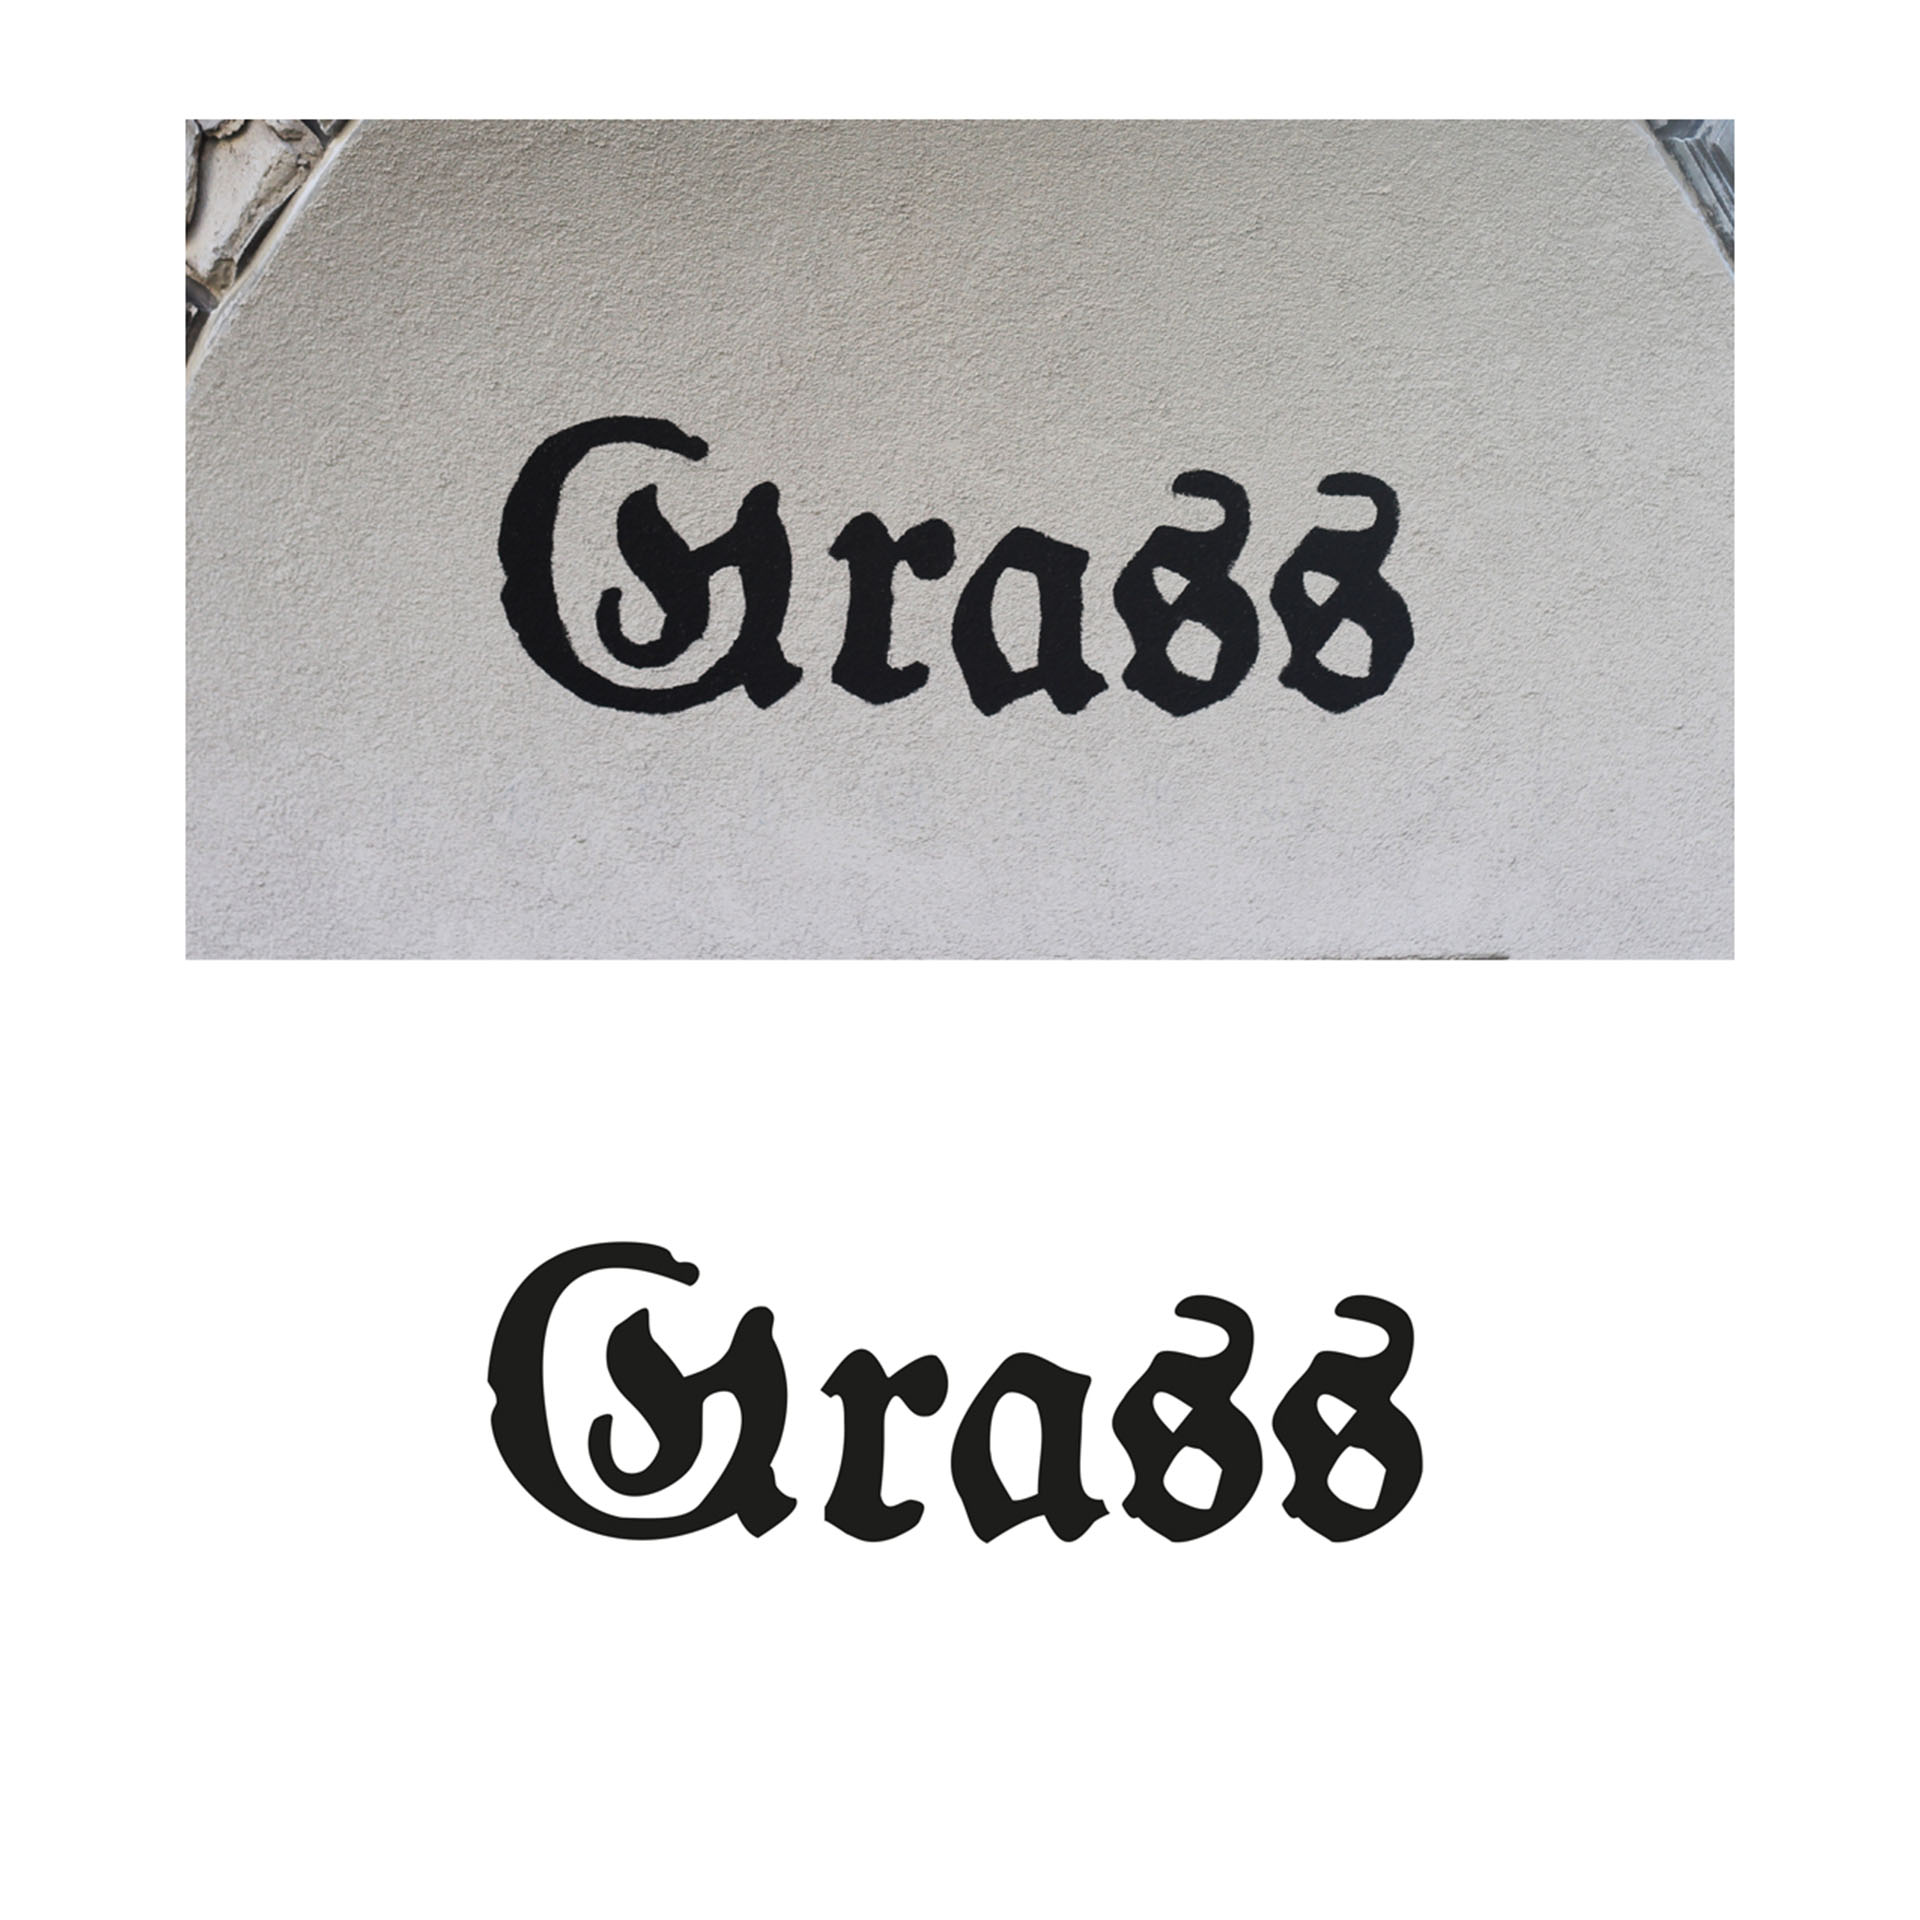 Zestawienie dwóch typografii, jedna jako fotografia z przestrzeni miejskiej napis Grass, druga to zapis wektorowy czarny. 